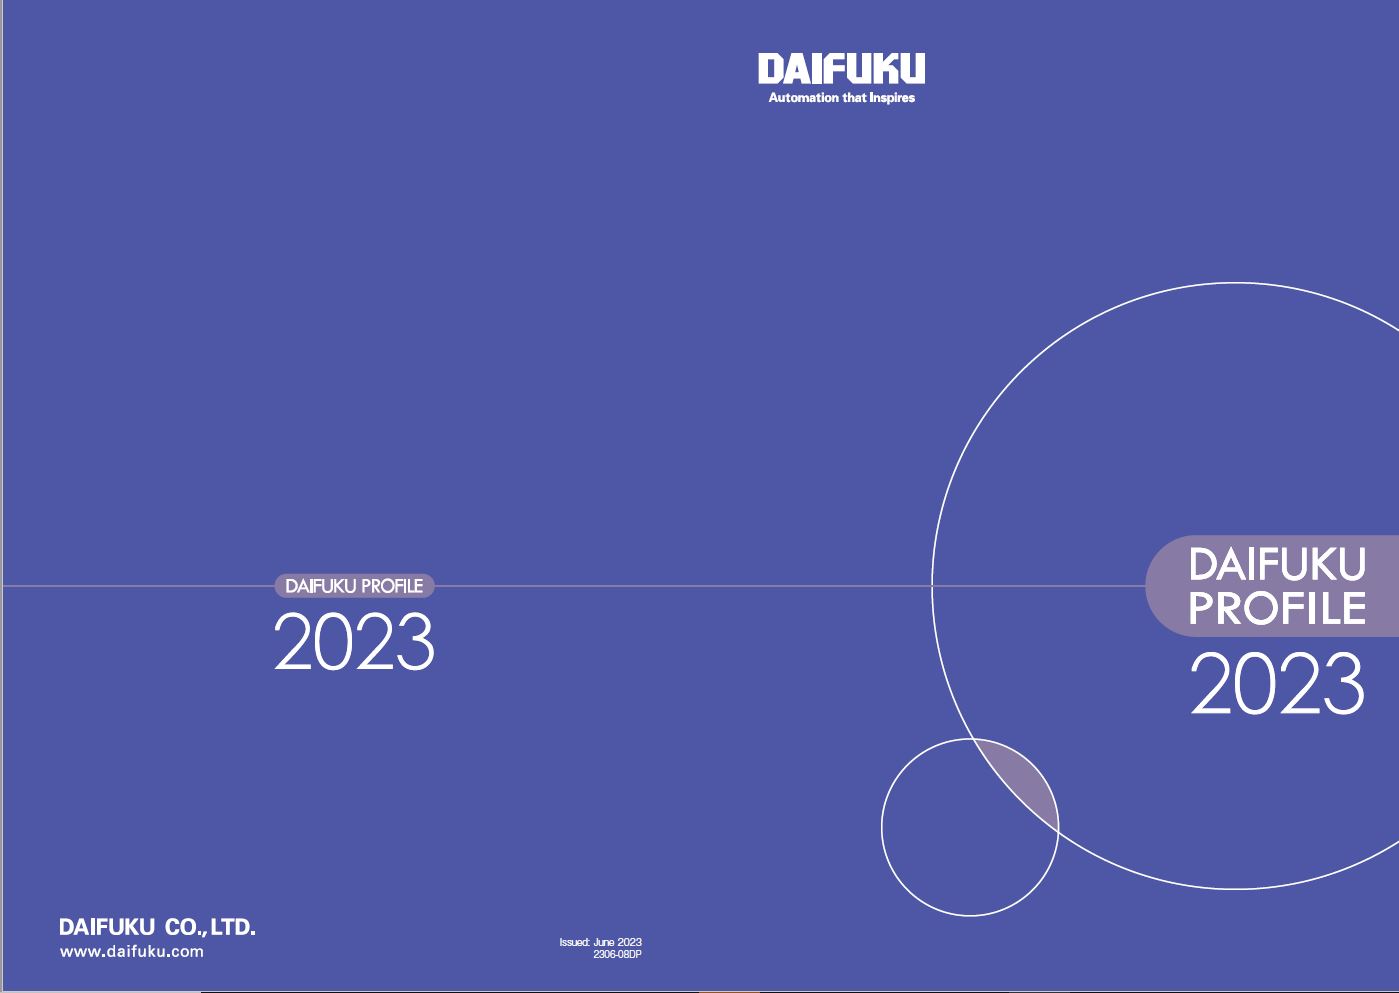 DAIFUKU PROFILE 2023